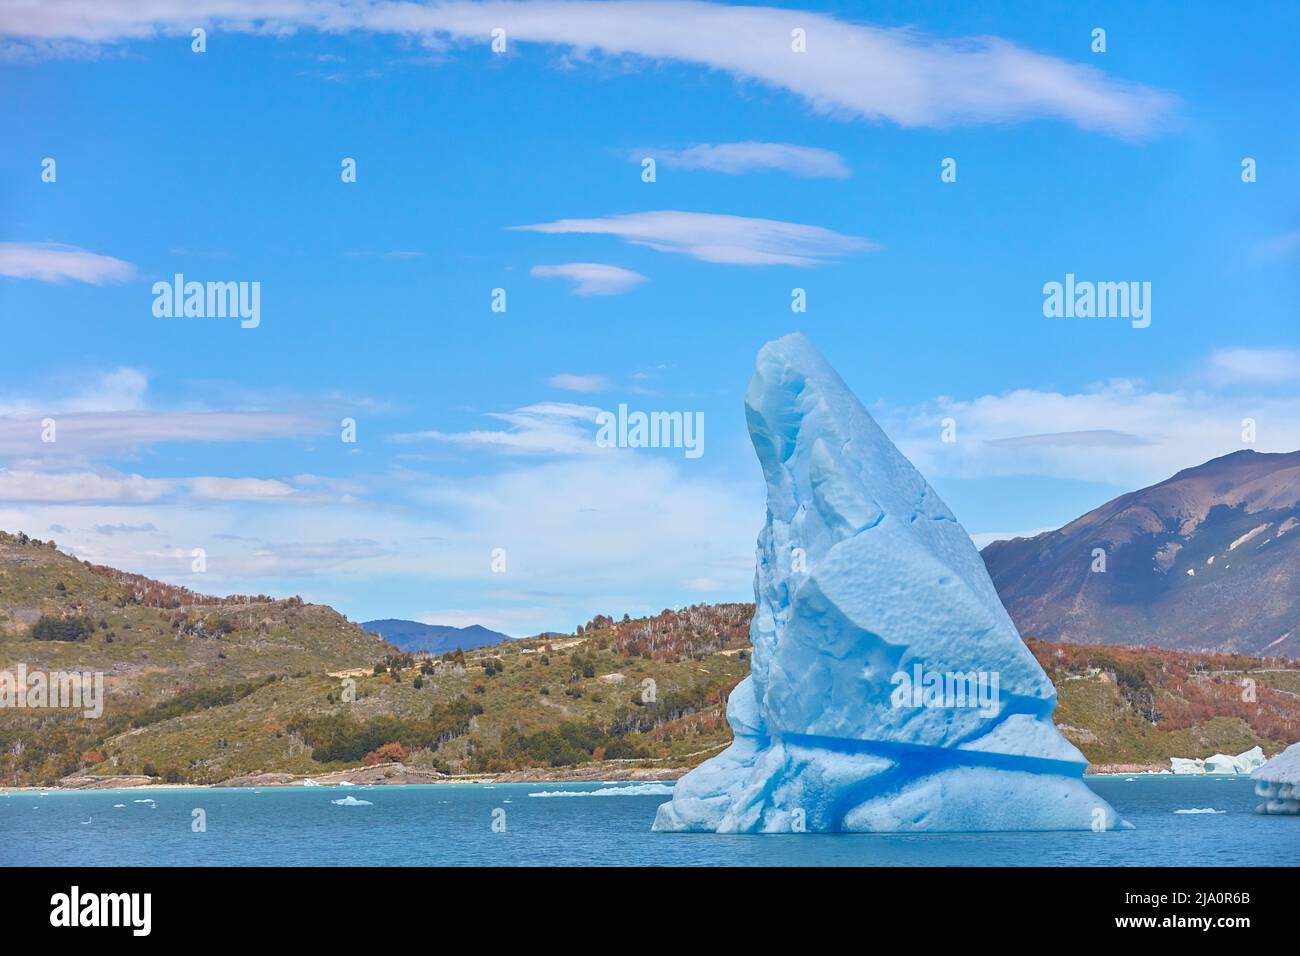 Ein großer blauer Eisberg, der vom Perito Moreno-Gletscher in der Bucht „Canal de los Tempanos“, Los Glaciares National Park, Santa Cruz, Argentinien, abgetrennt ist. Stockfoto